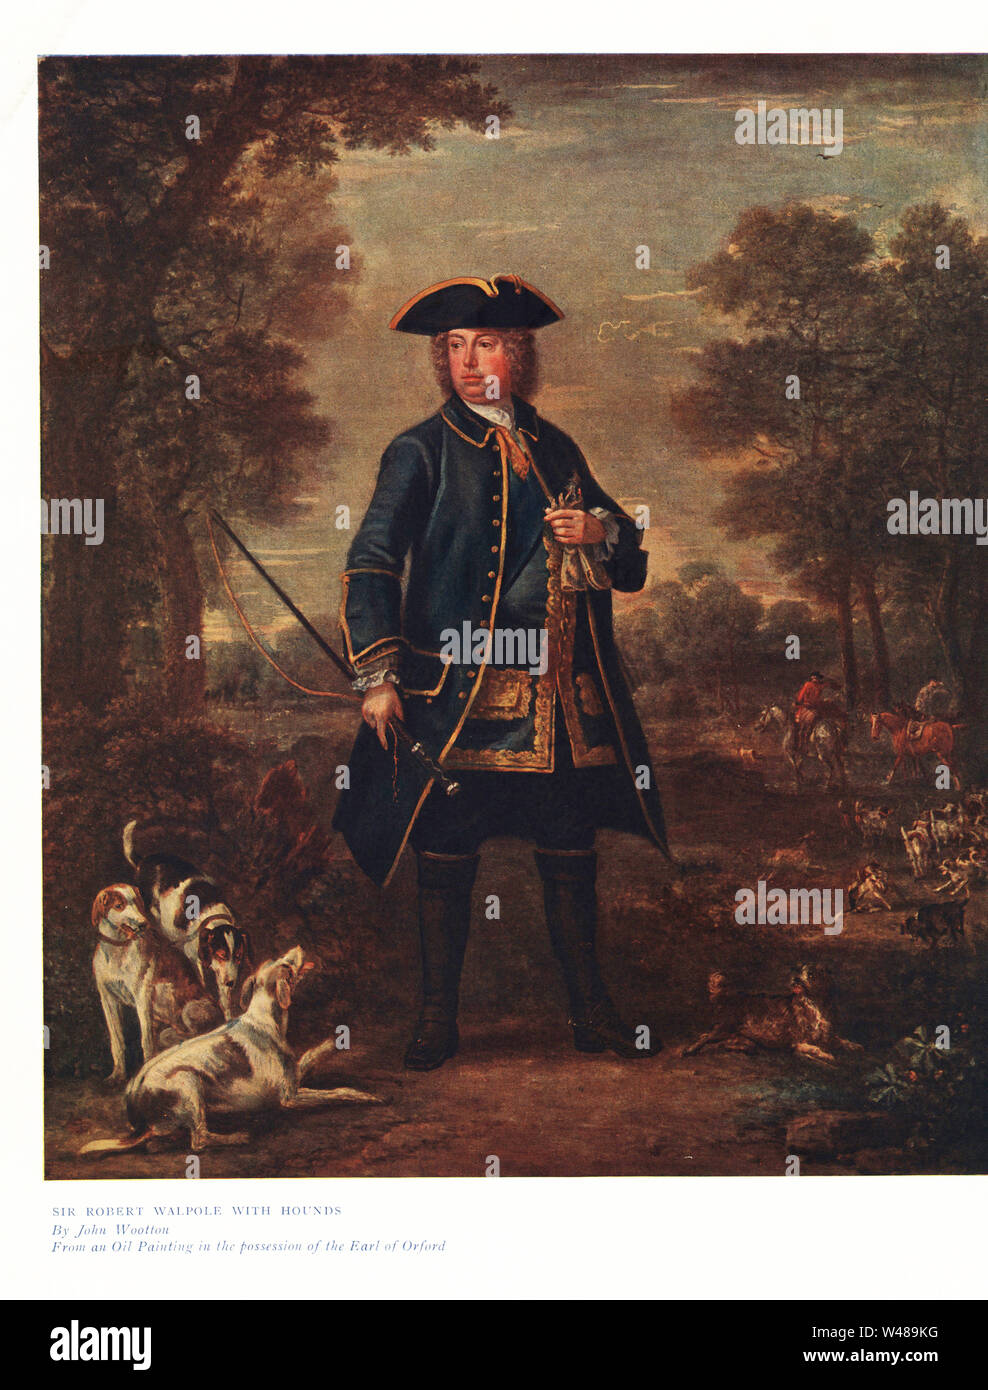 Sir Robert Walpole mit Hunden, eine Fuchsjagd im Hintergrund. Farbe Drucken aus einer Abbildung von John wootton in Ralph Nevill's Old Sporting Drucke, den Kenner Magazine, London, 1908. Stockfoto